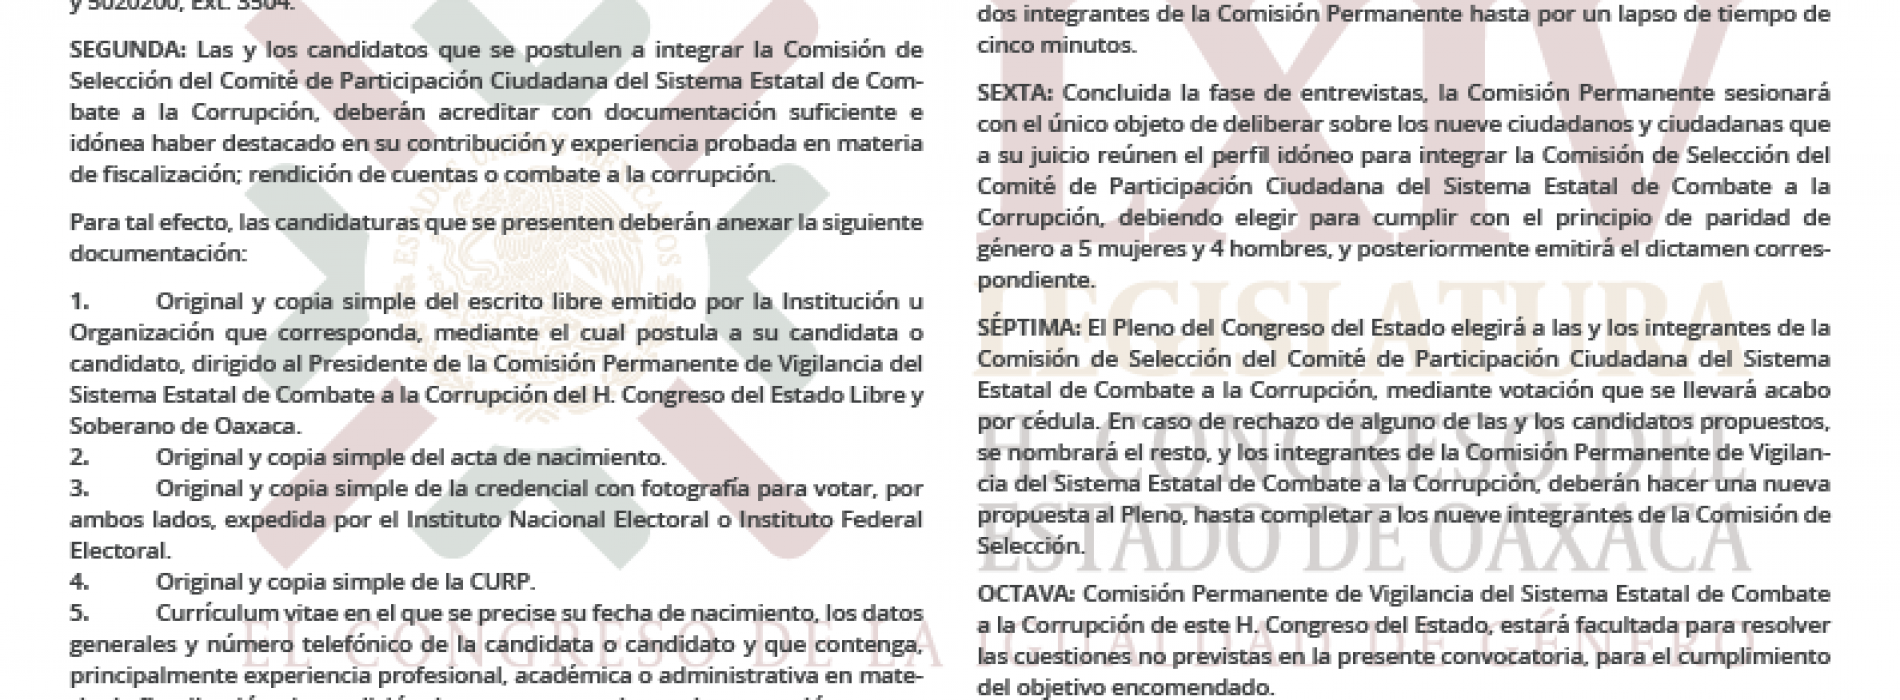 Convoca Congreso a renovar la Comisión de Selección del organismo estatal ciudadano en materia anticorrupción